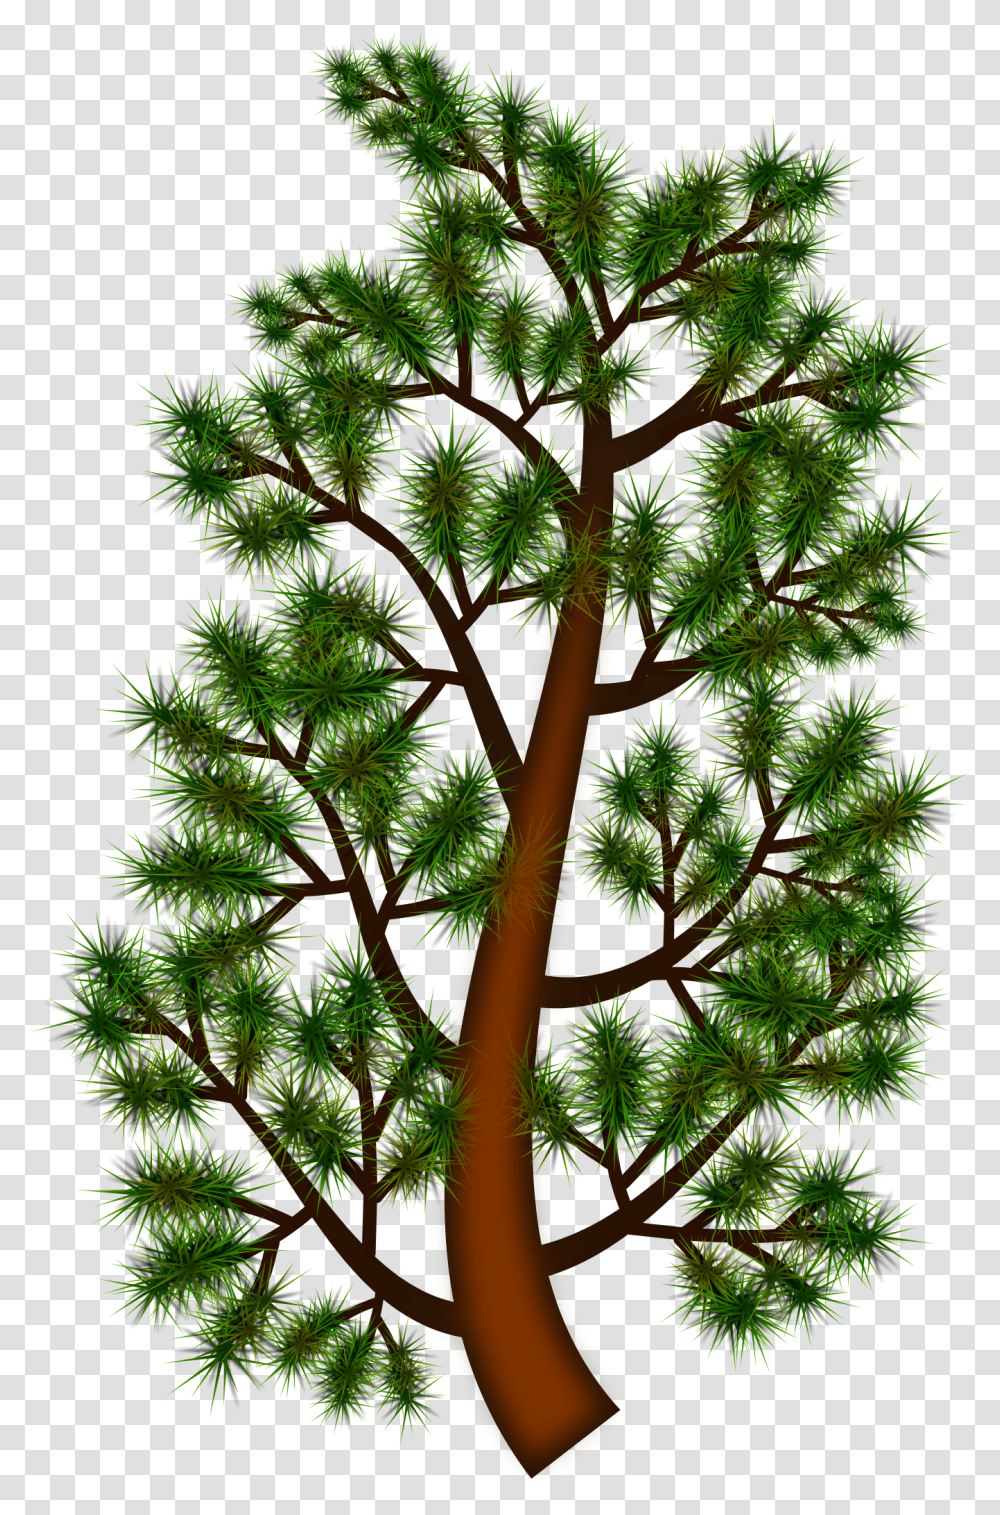 Clip Art Pine Tree Branch Clip Art, Plant, Potted Plant, Vase, Jar Transparent Png